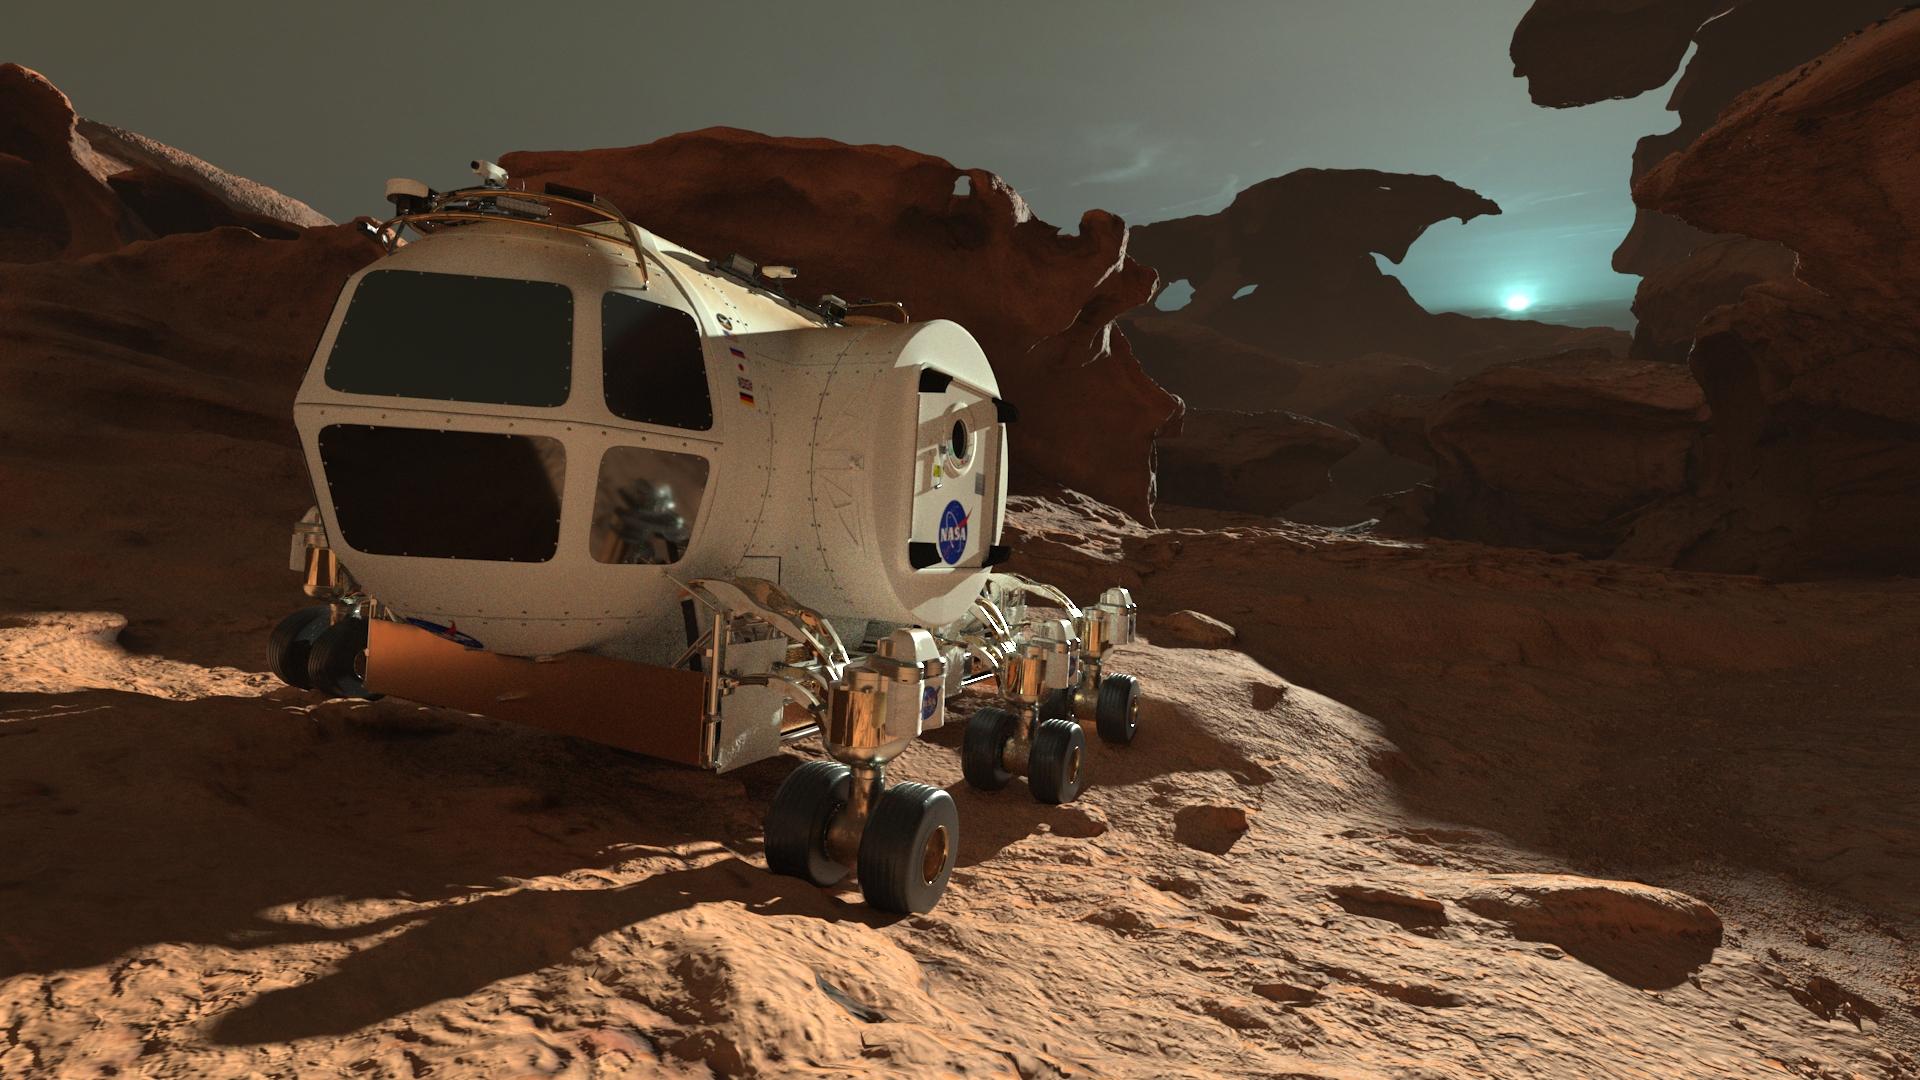 香港太空館天象廳五月一日起放映全新天象節目《火星千日行》，讓觀眾踏上虛擬旅程，跟隨太空人展開為期1,001日的首次載人登陸火星虛構任務，一同探索這紅色行星。圖示節目中太空人在火星上移動時乘坐的載具。火星晝夜溫差極大，令太空人不能長期逗留在室外。（圖片來源：© Mirage3D）